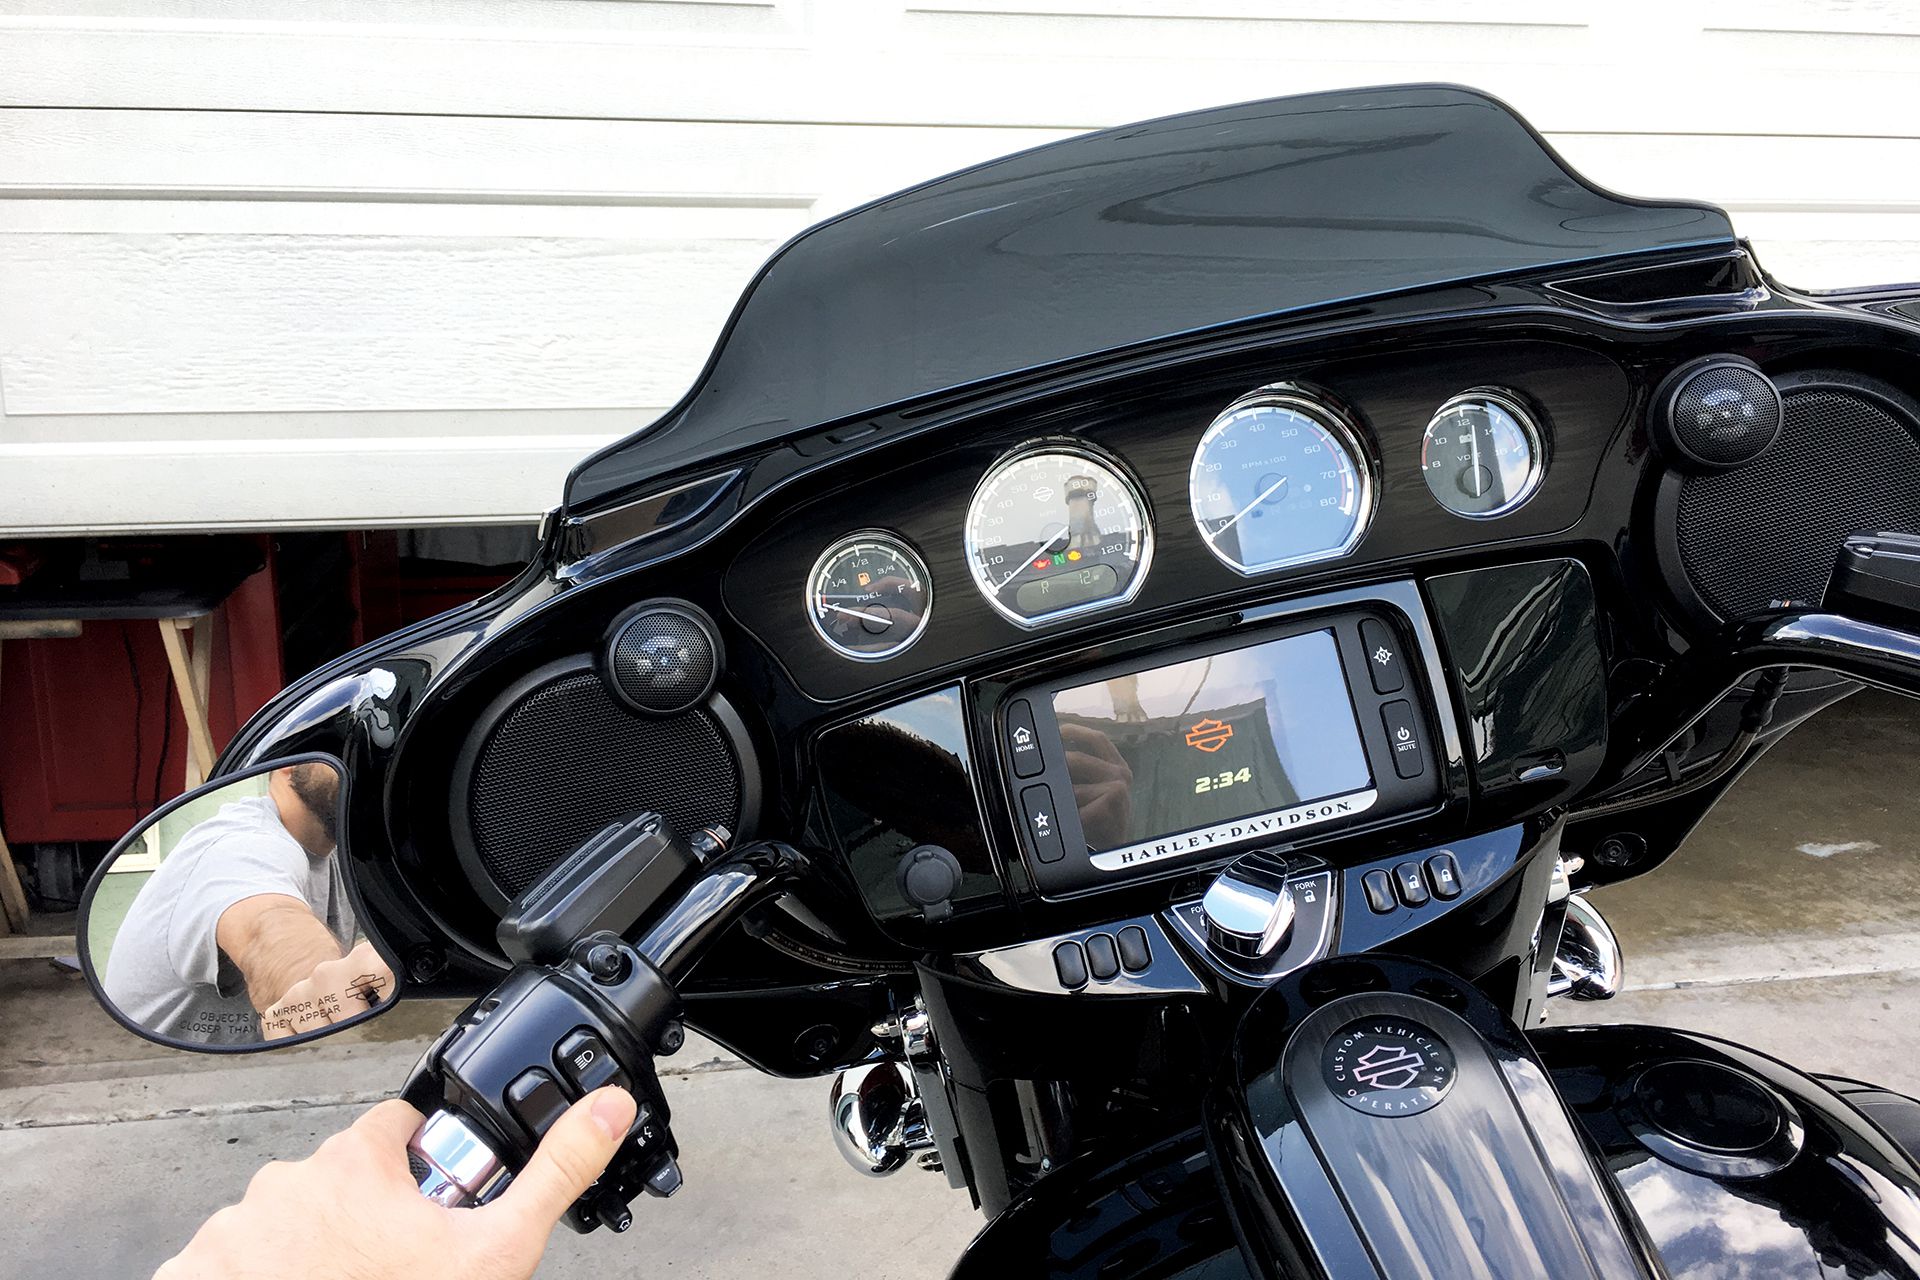 80  Motorcycle garage door opener reviews for Android Wallpaper